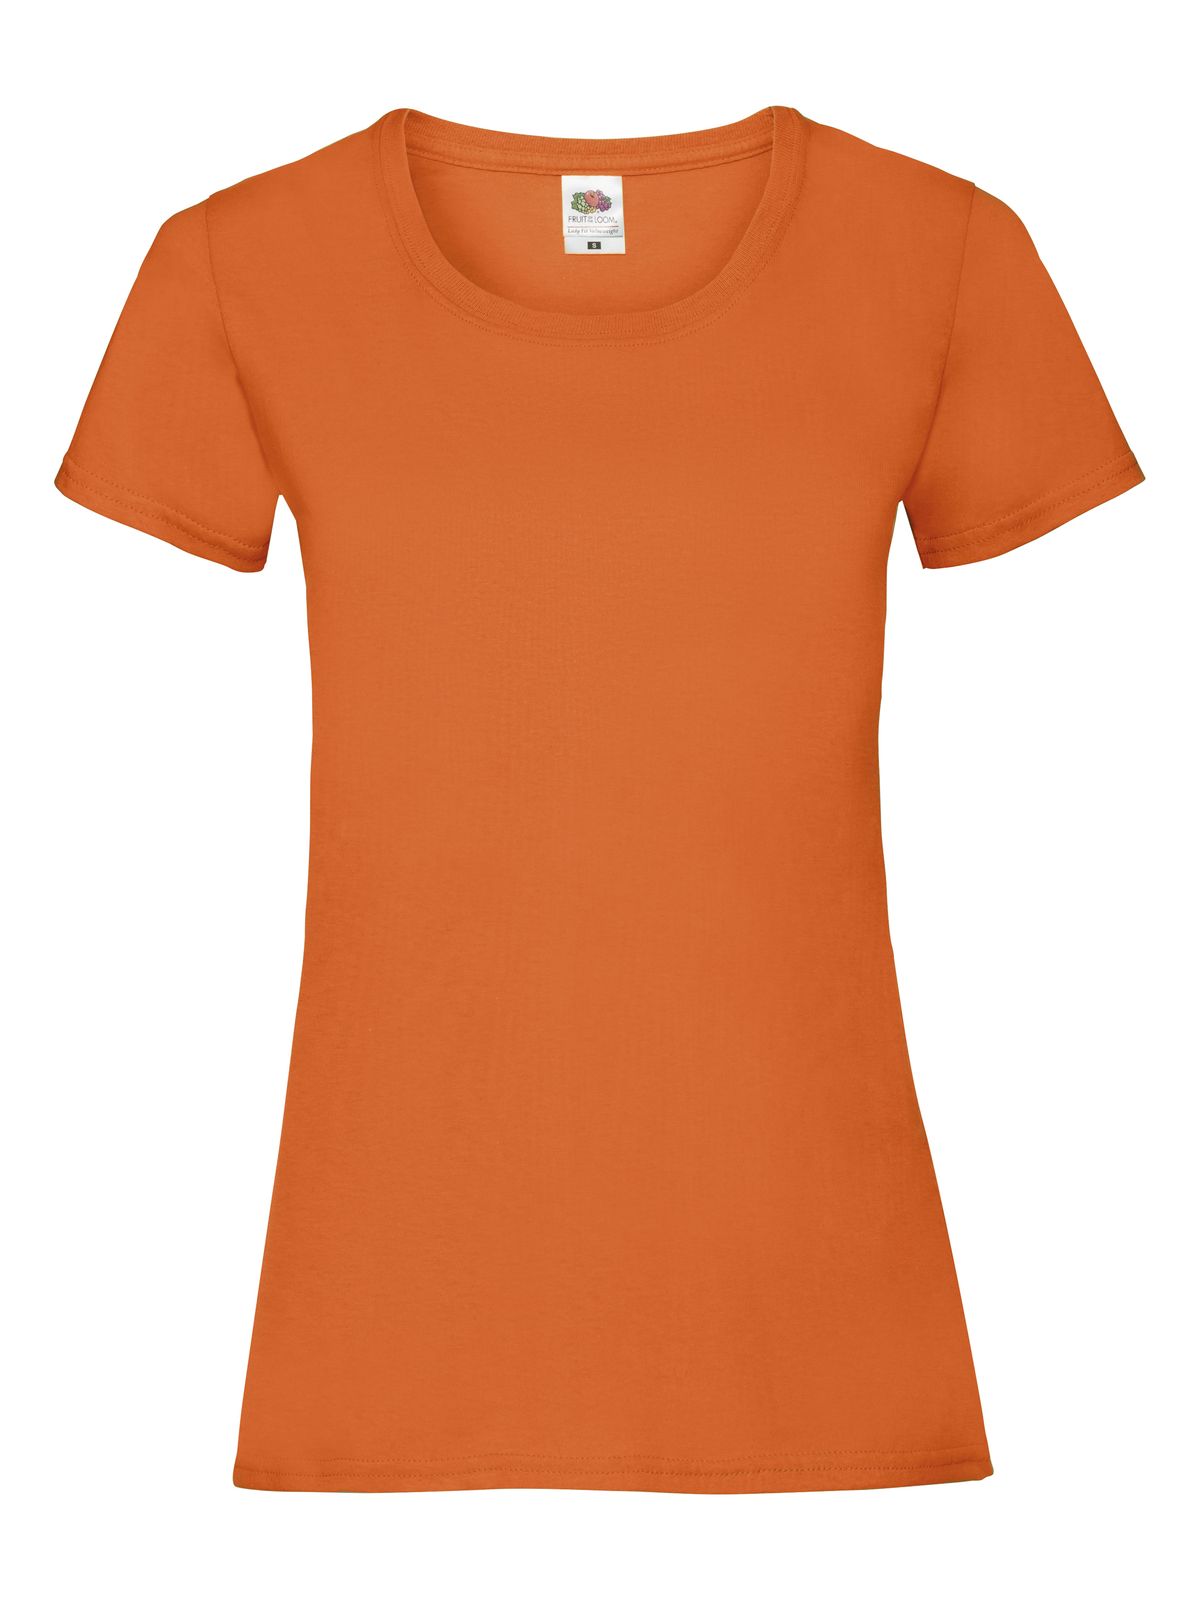 ladies-valueweight-t-orange.webp